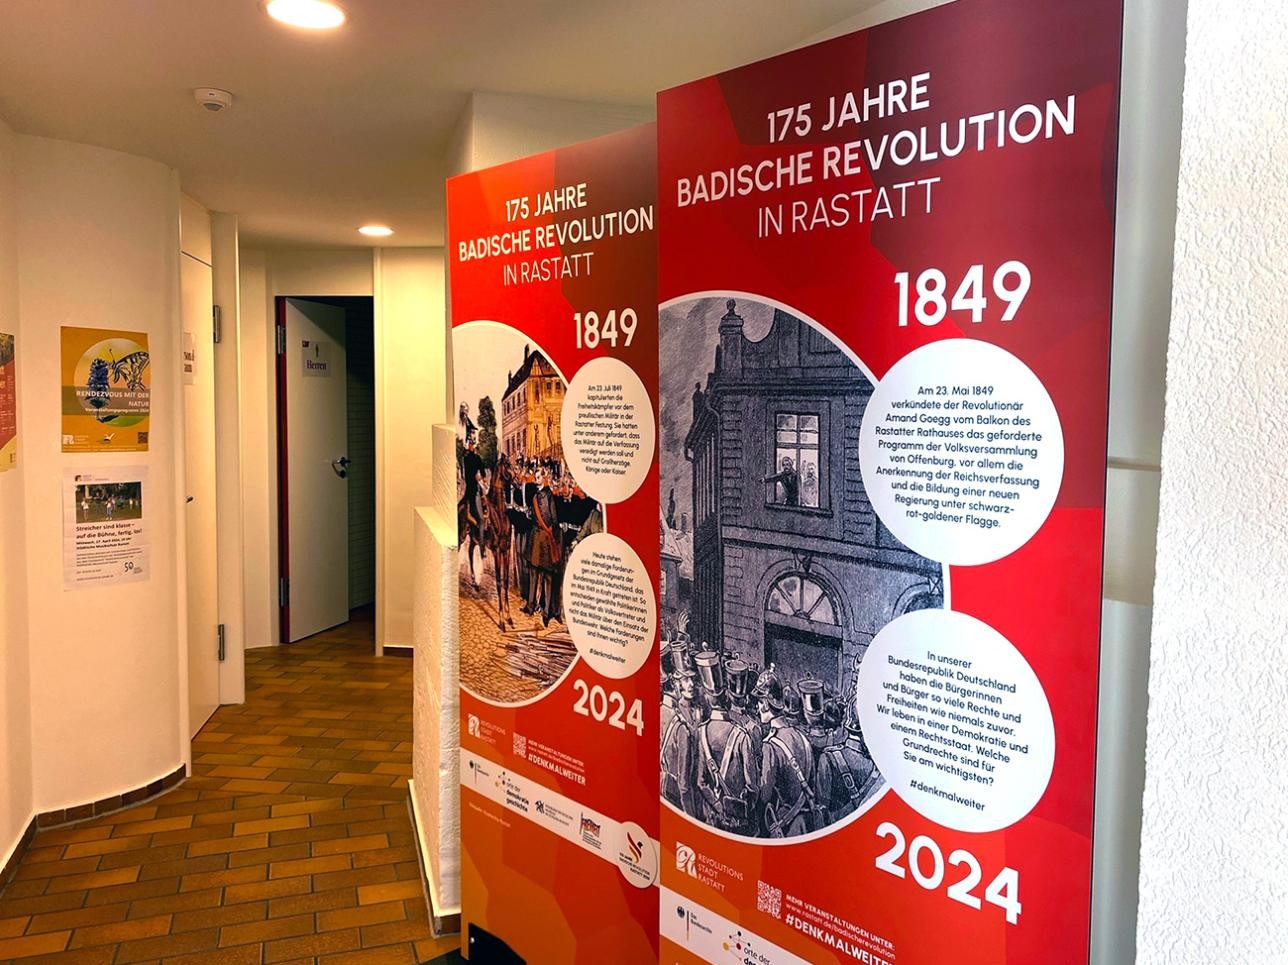 Panneaux d'information à l'office de tourisme sur les 175 ans de la Révolution badoise